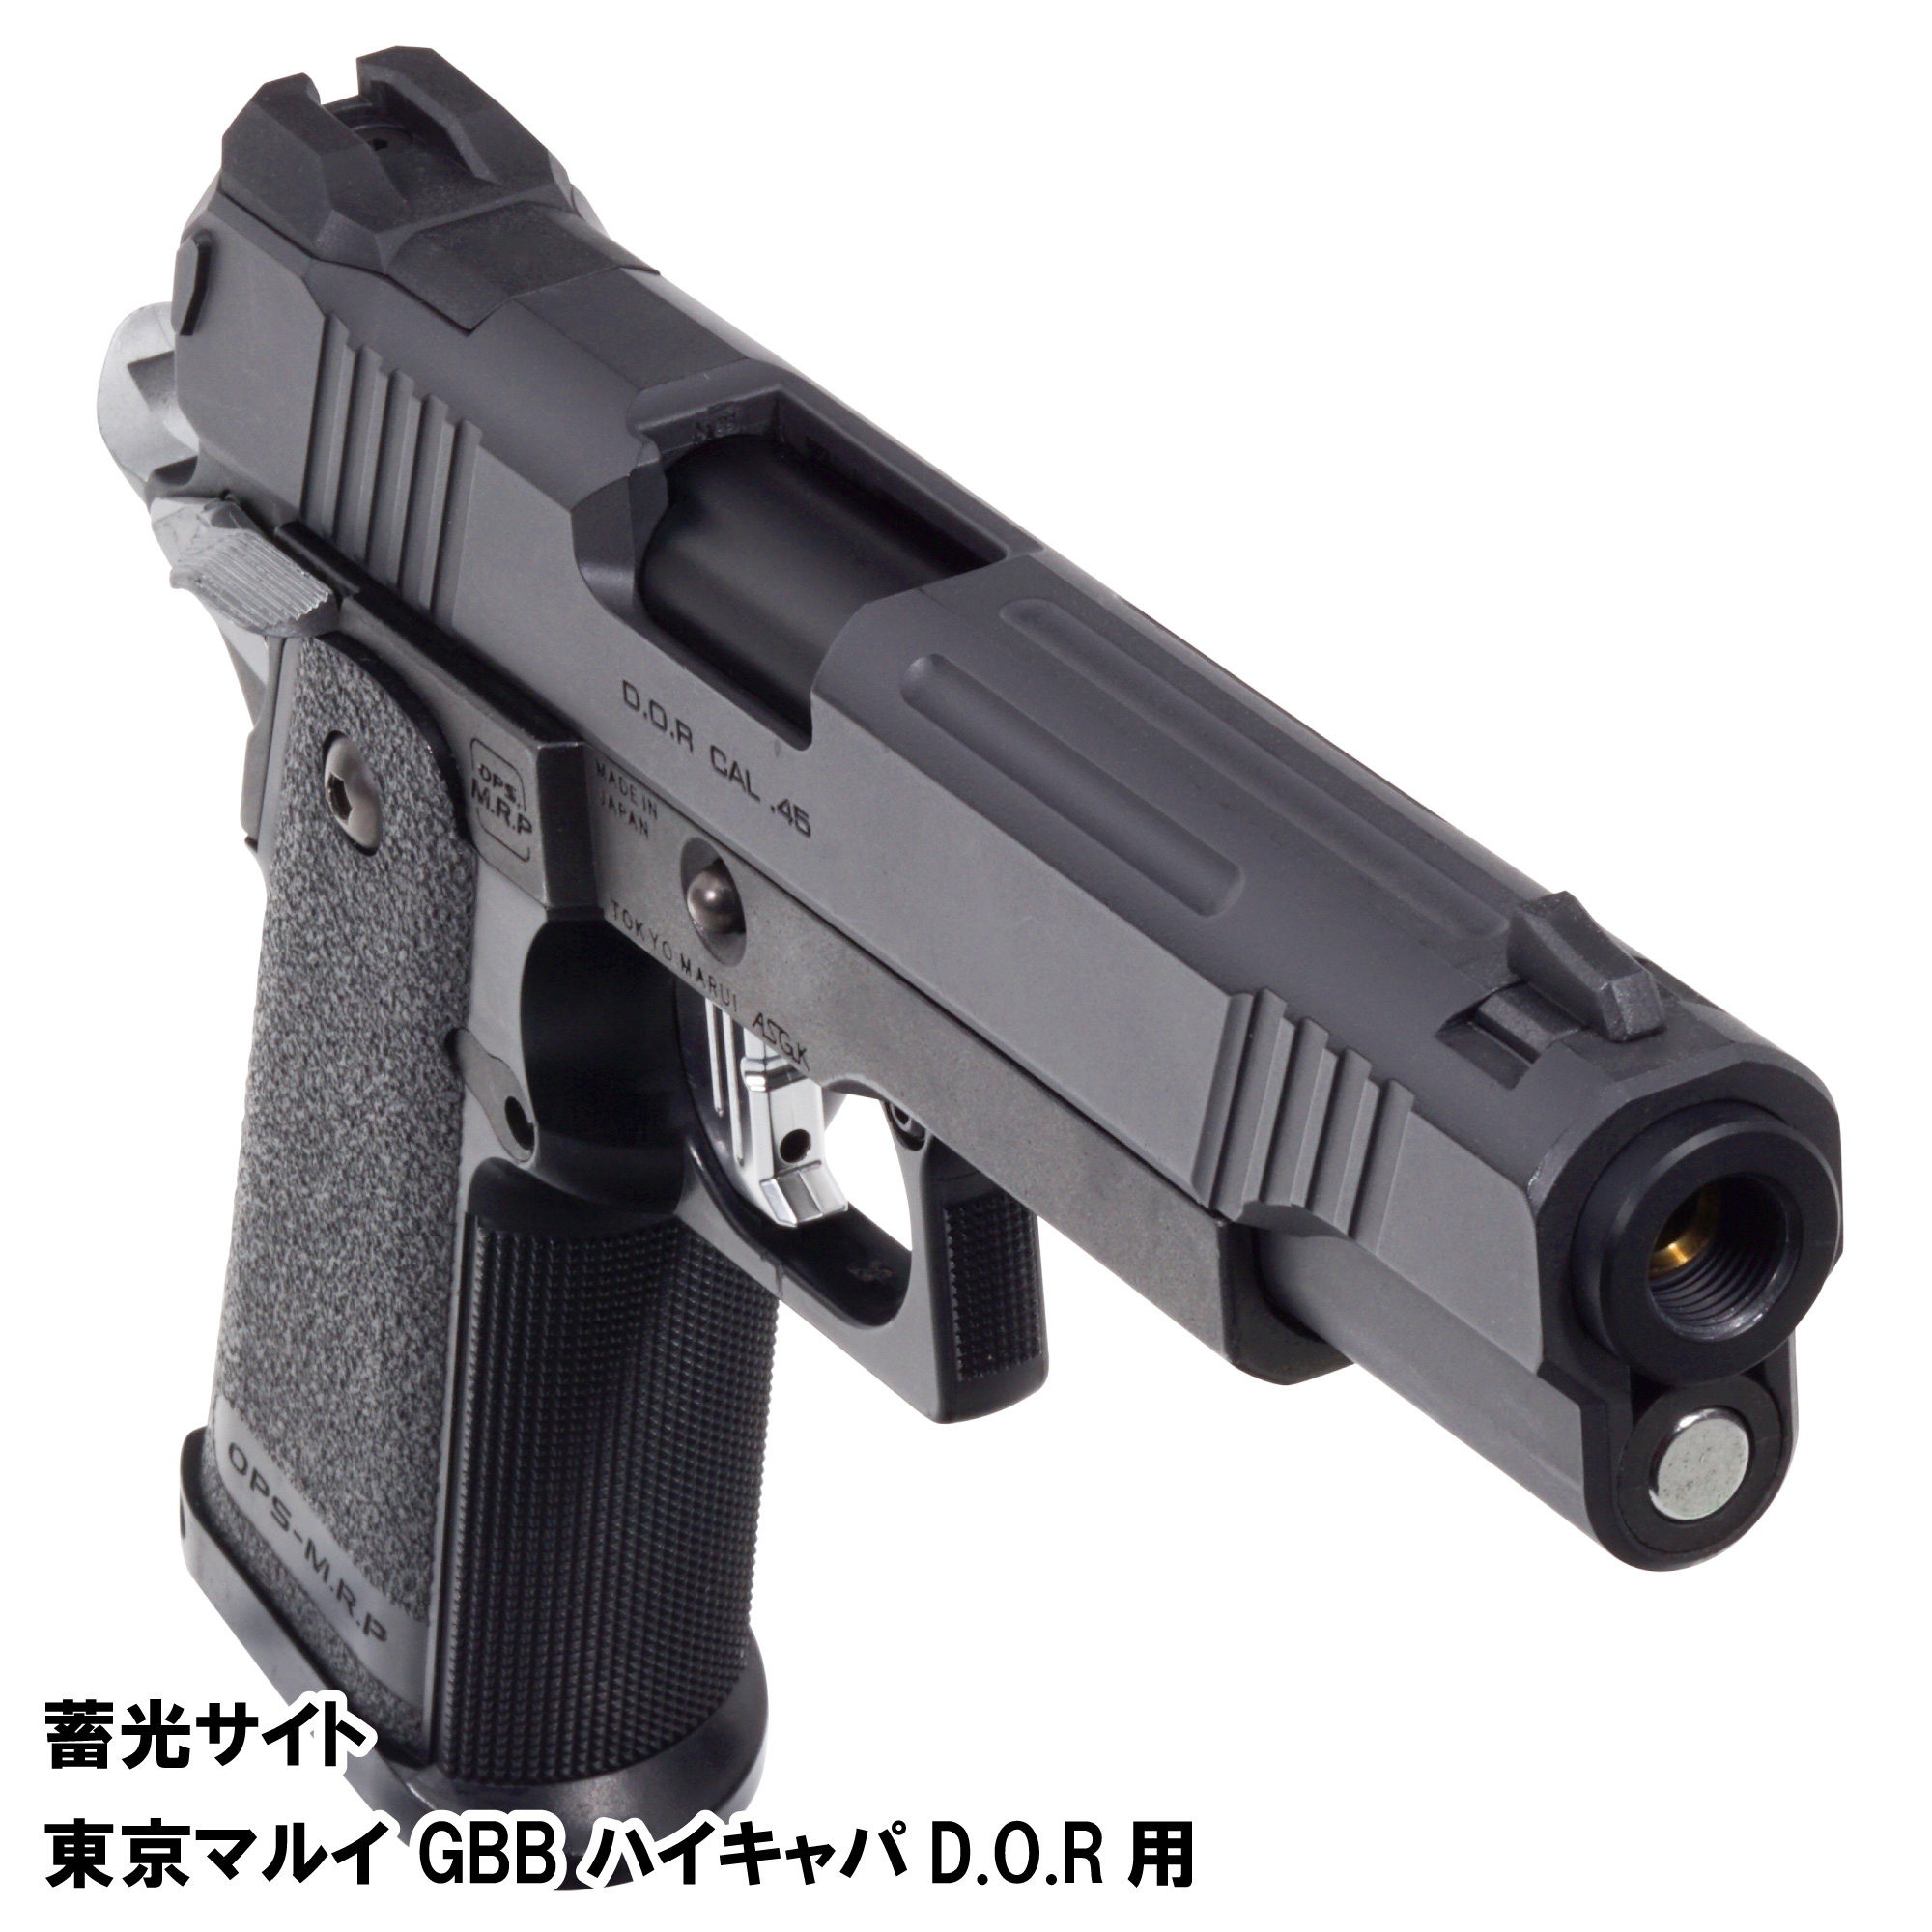 蓄光サイト 東京マルイ ハイキャパD.O.R用 | DCI Guns 公式直販ストア